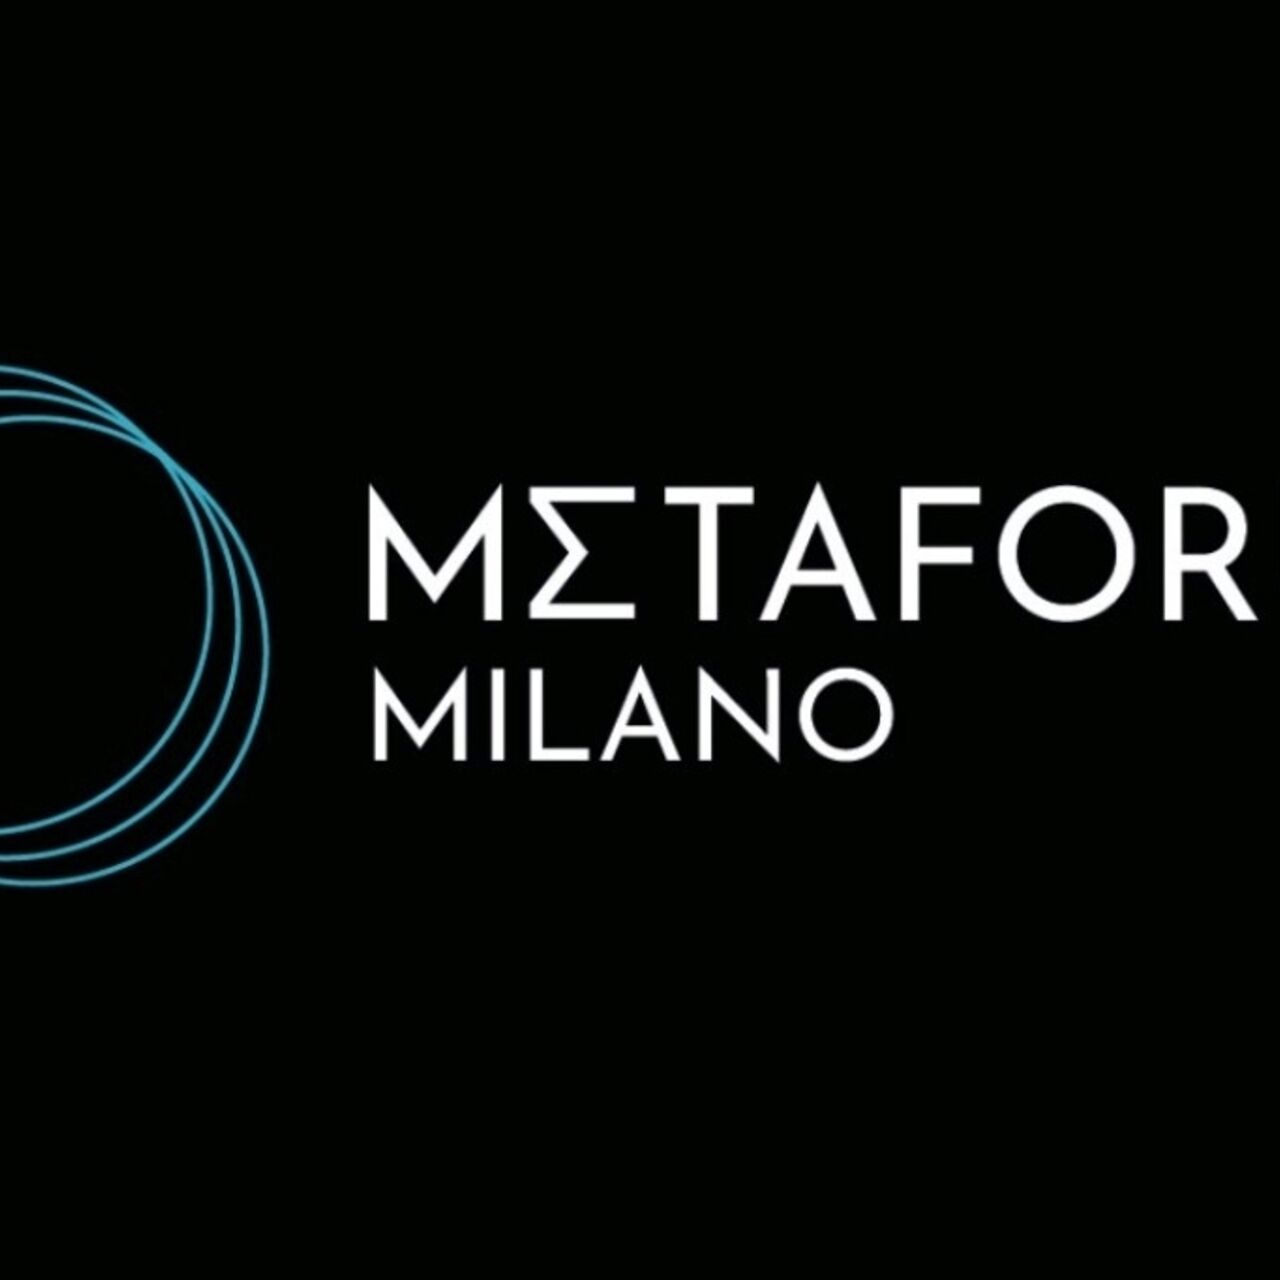 Metaforum: logotypen för Metaforum Milano